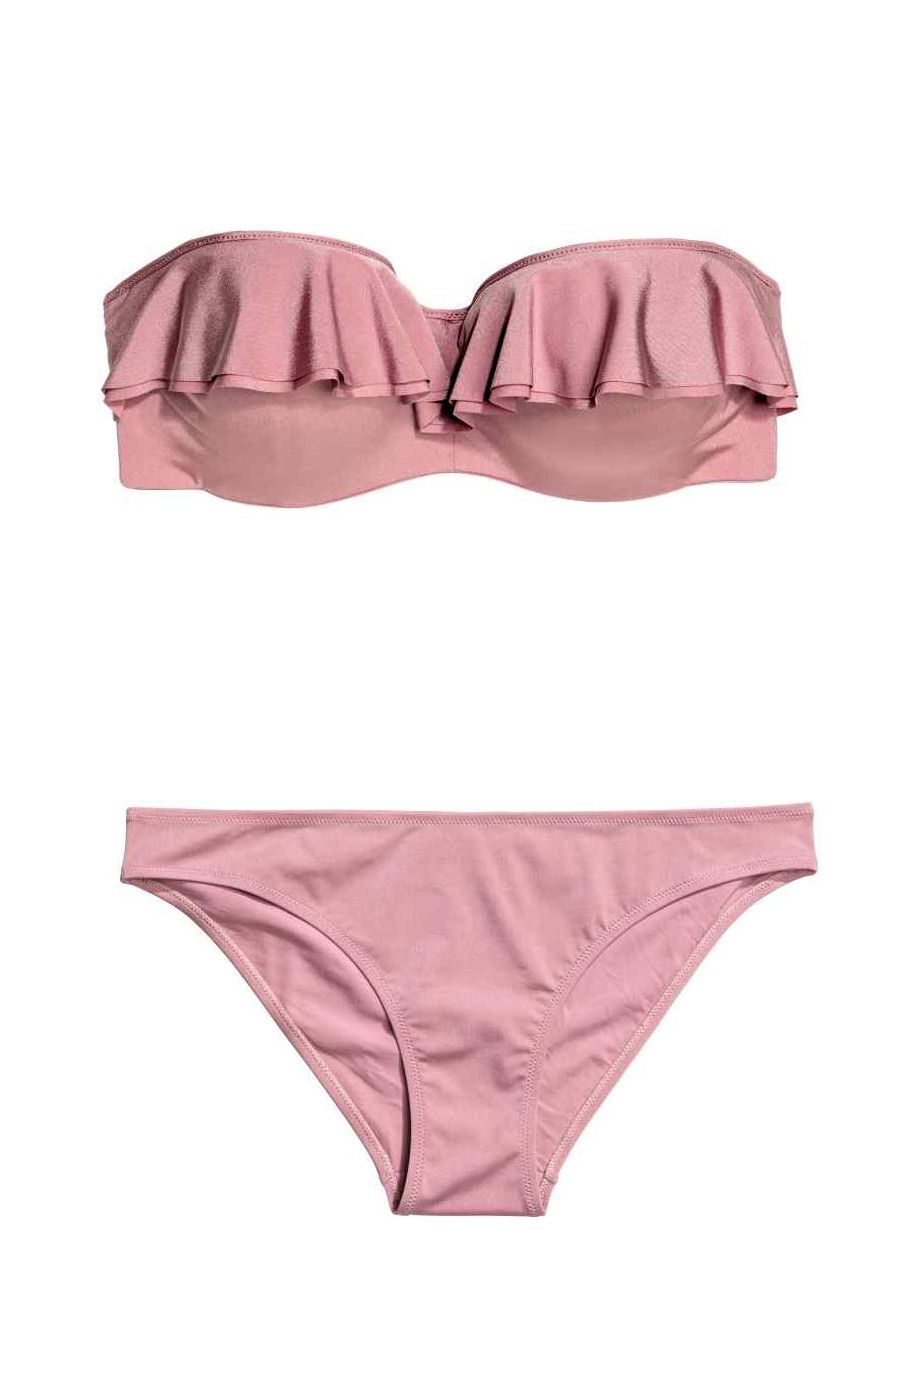 Bikini più belli estate 2017 come il due pezzi rosa antico a fascia di H&M